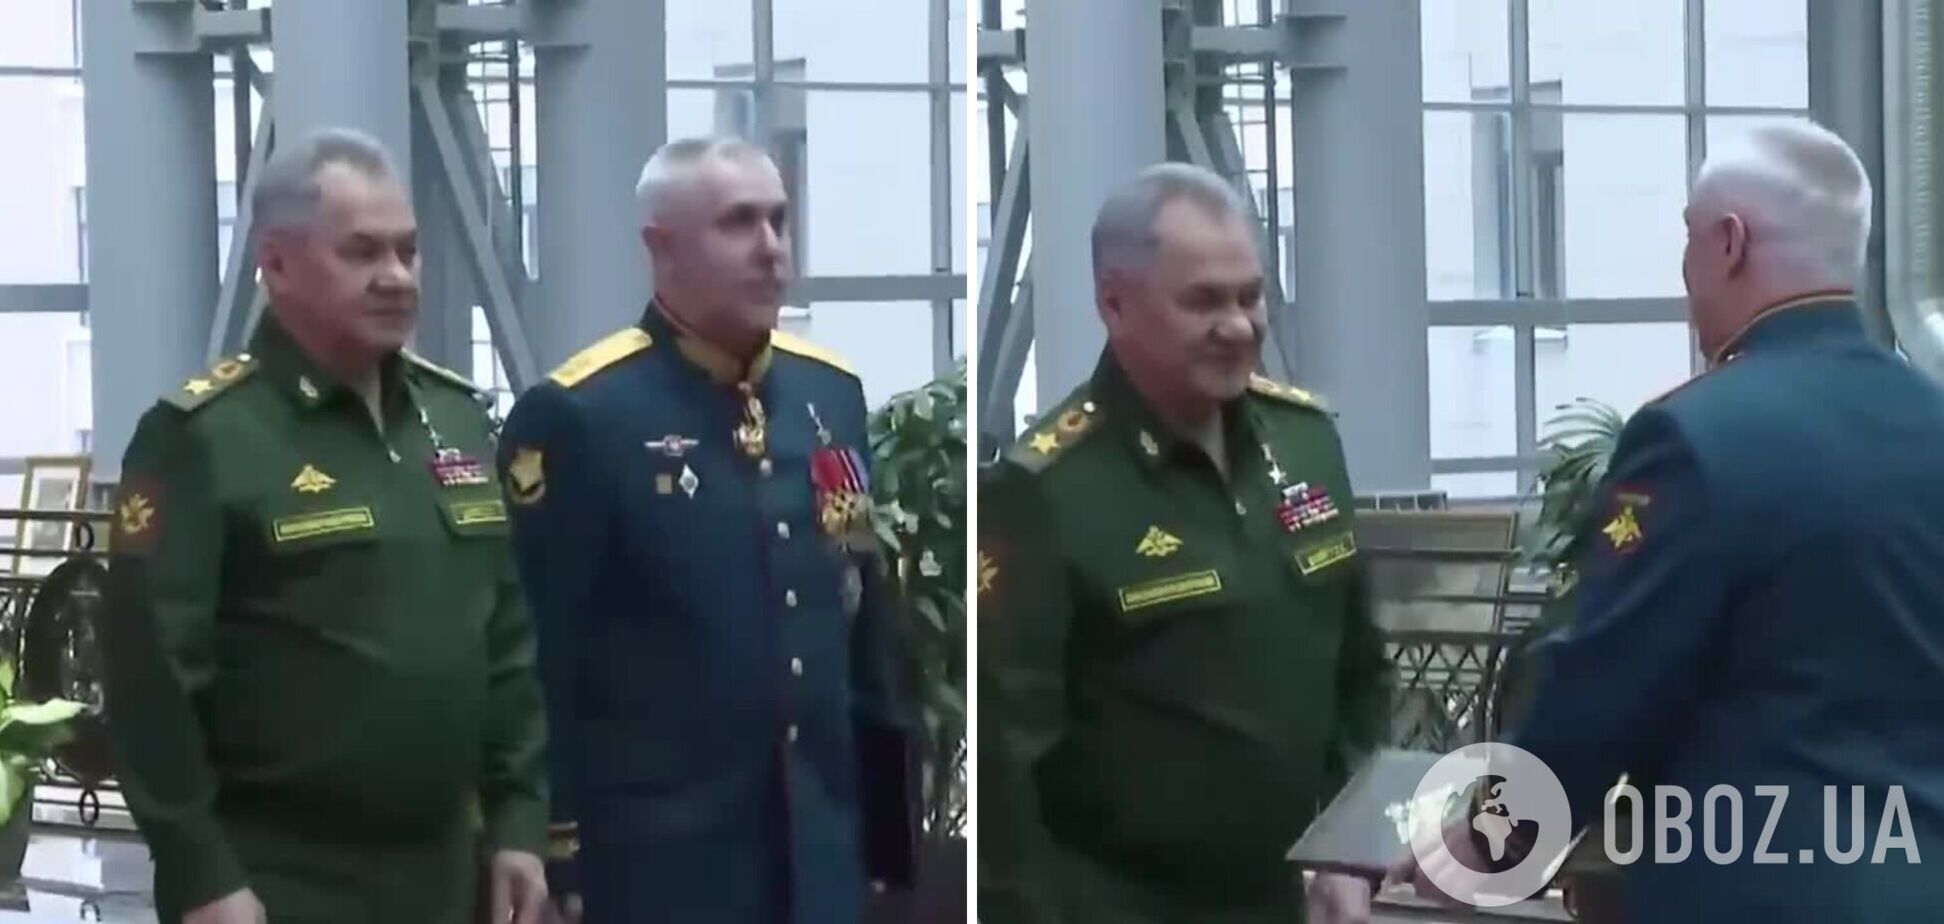 Шойгу урочисто вручив погони генералу Мурадову, який 'поховав' під Вугледаром елітну бригаду російських морпіхів. Відео 